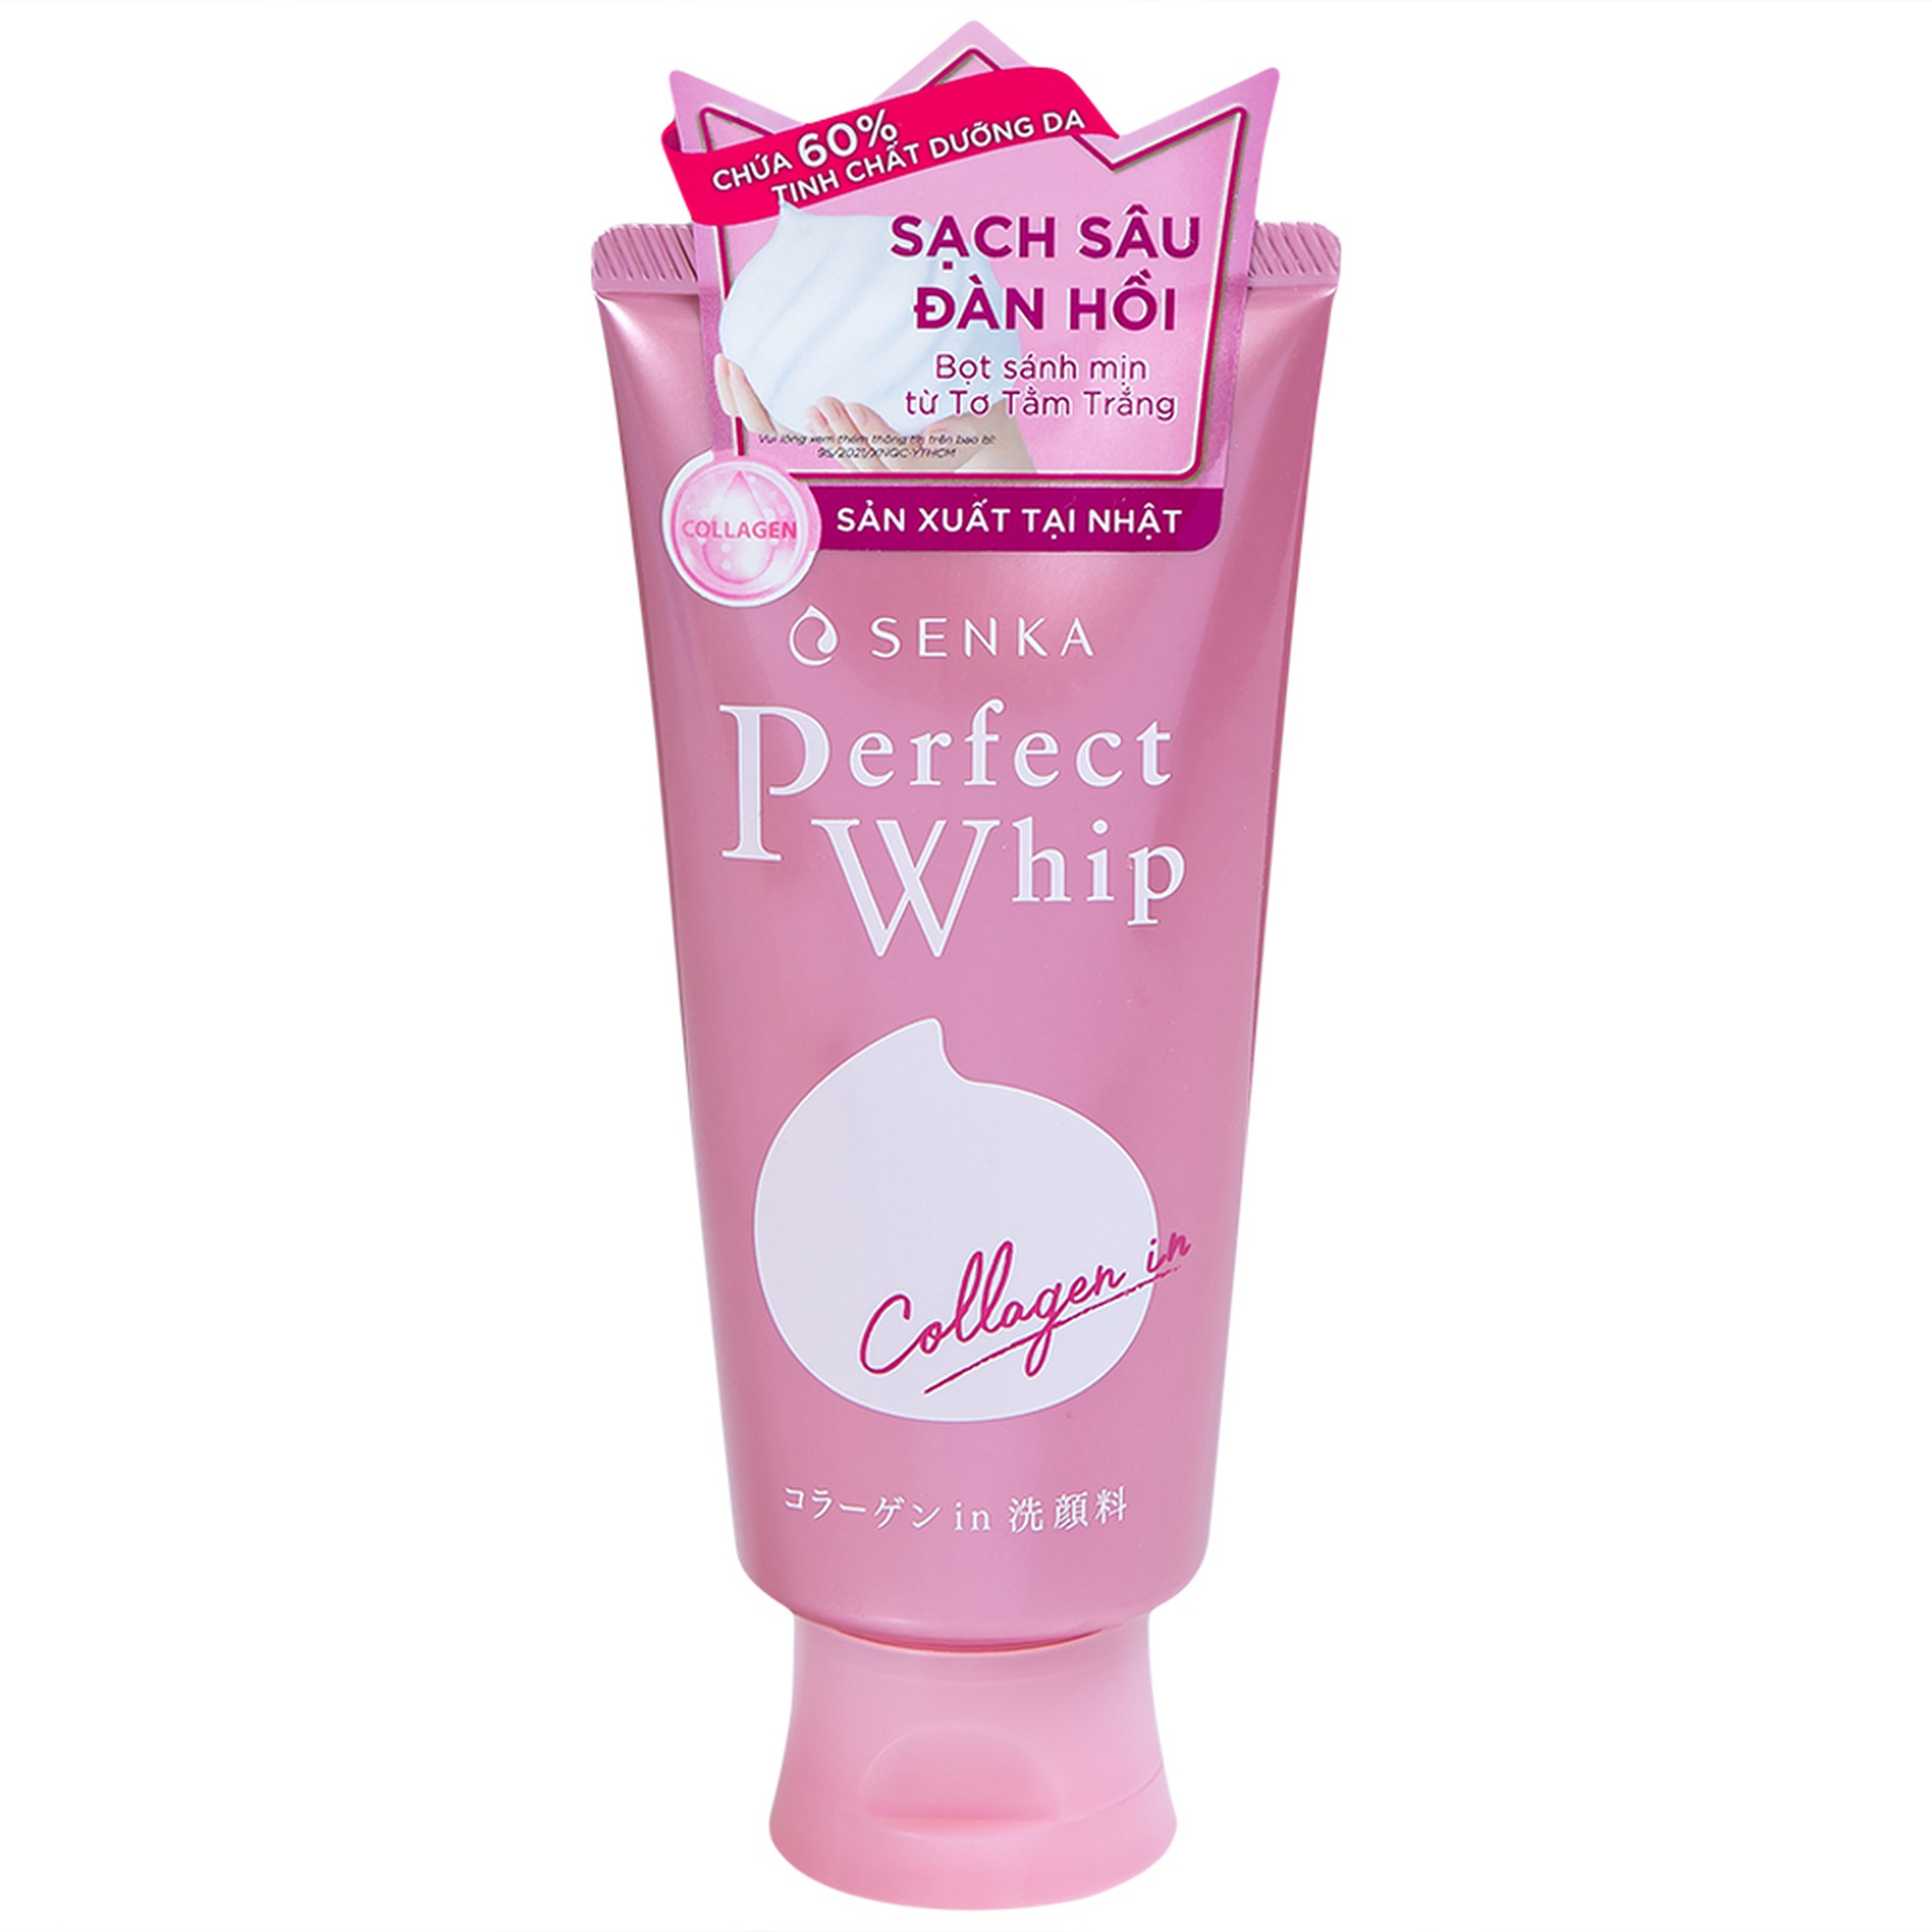 Sữa rửa mặt Collagen Senka Perfect Whip Collagen IN loại bỏ bụi bẩn, bụi mịn và bã nhờn (120g)